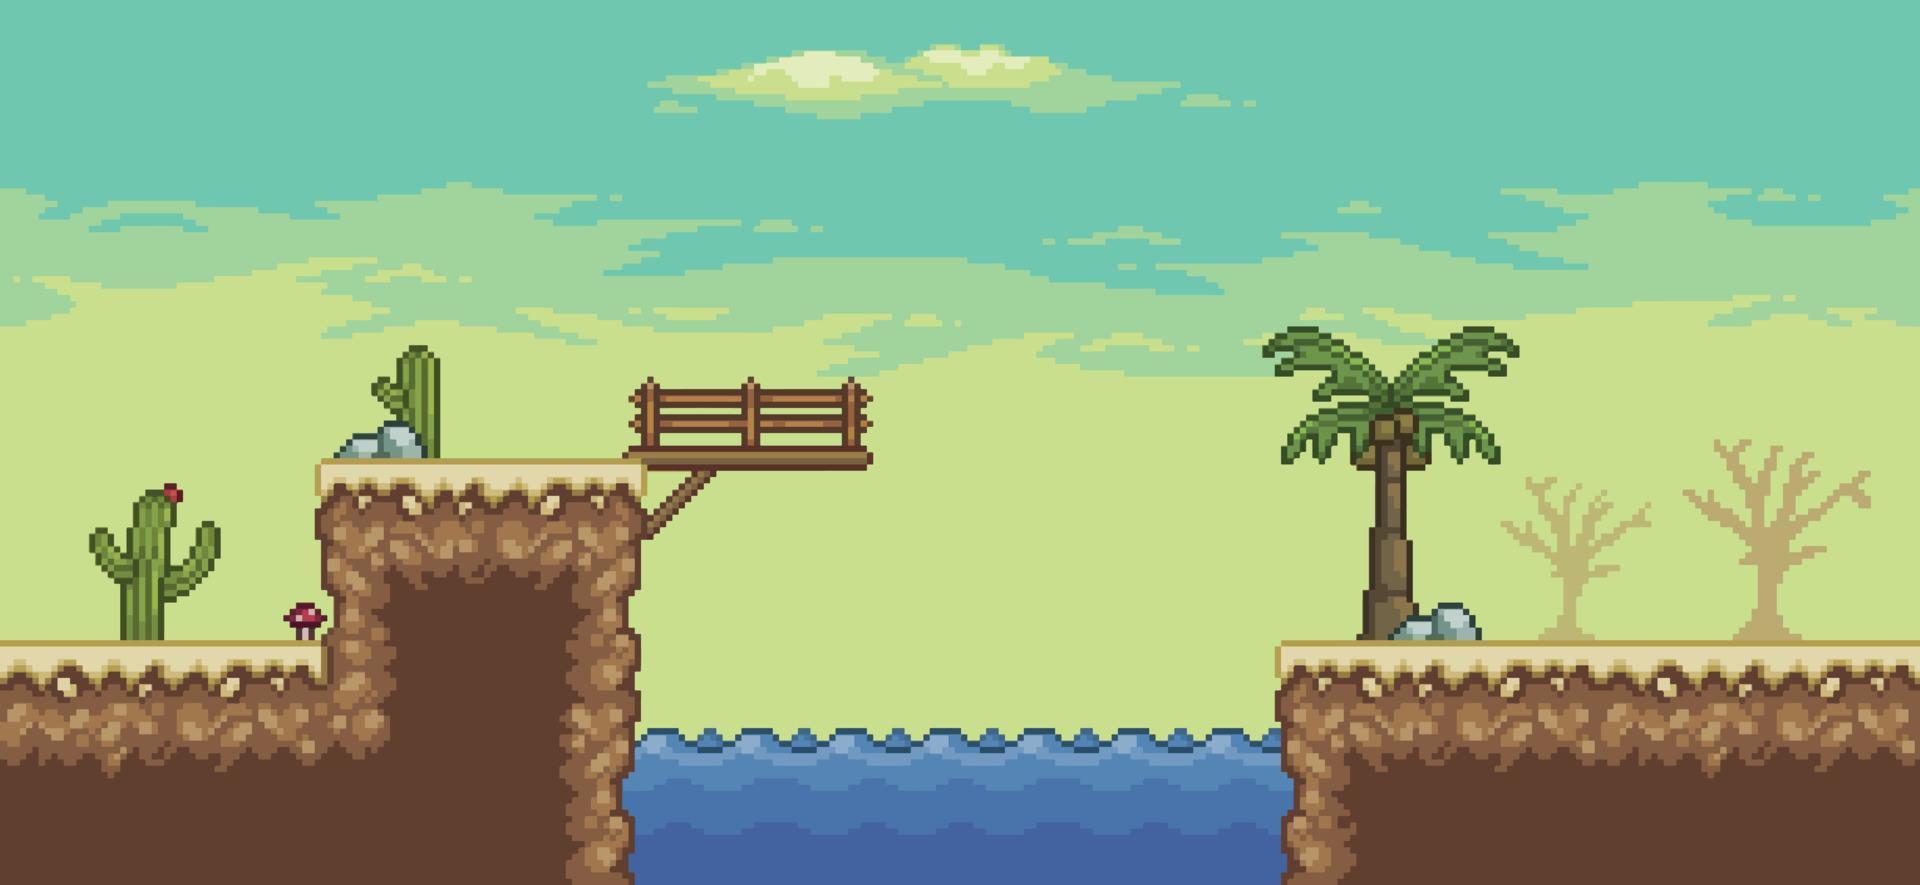 cena do jogo do deserto de pixel art com palmeira, oásis, cactos, fundo de paisagem de 8 bits da ponte vetor